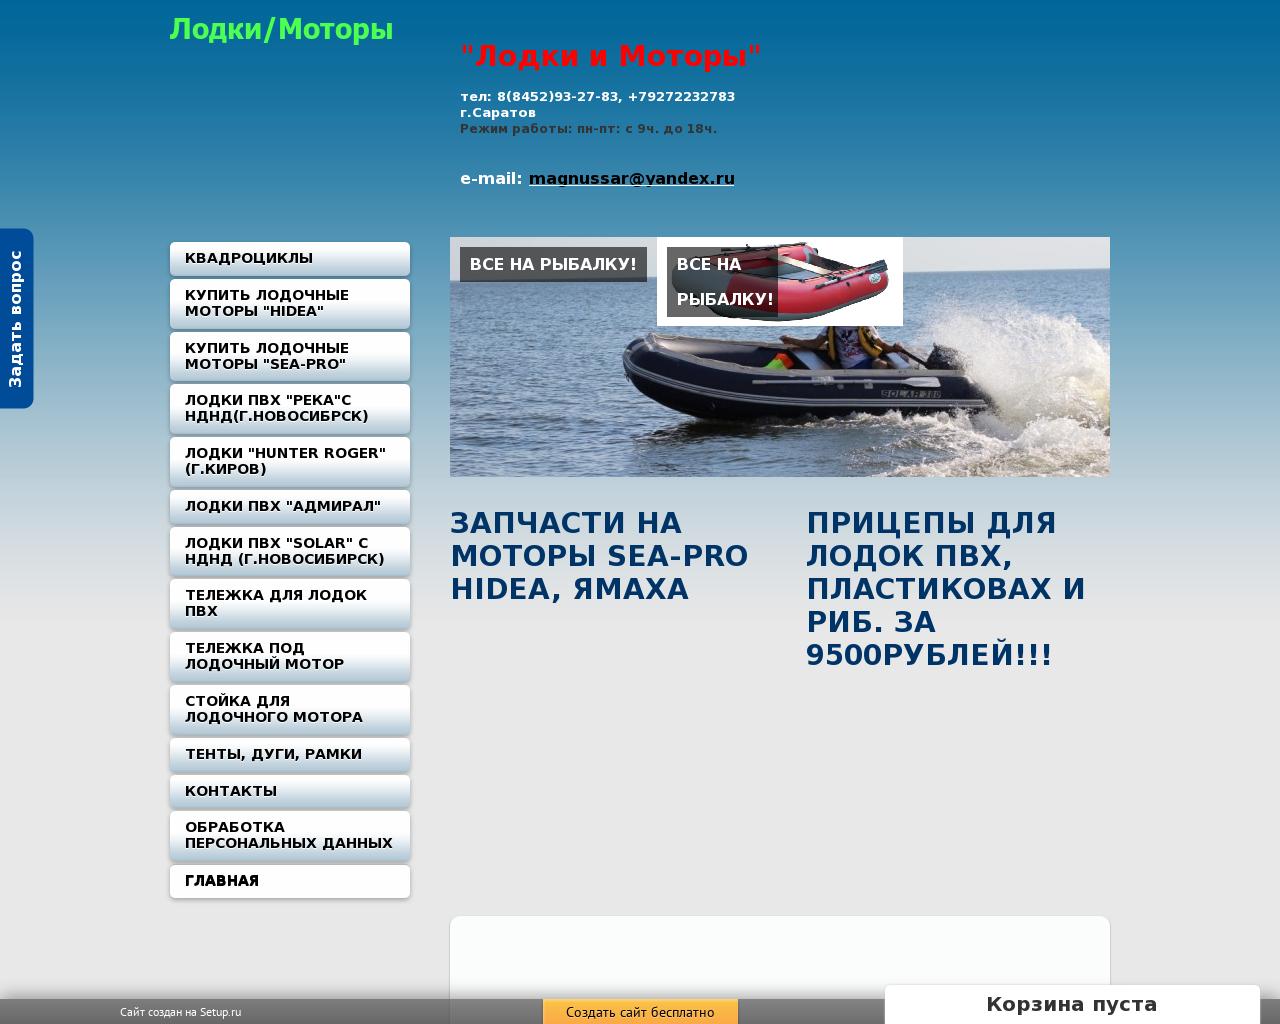 Изображение сайта magnussar.ru в разрешении 1280x1024